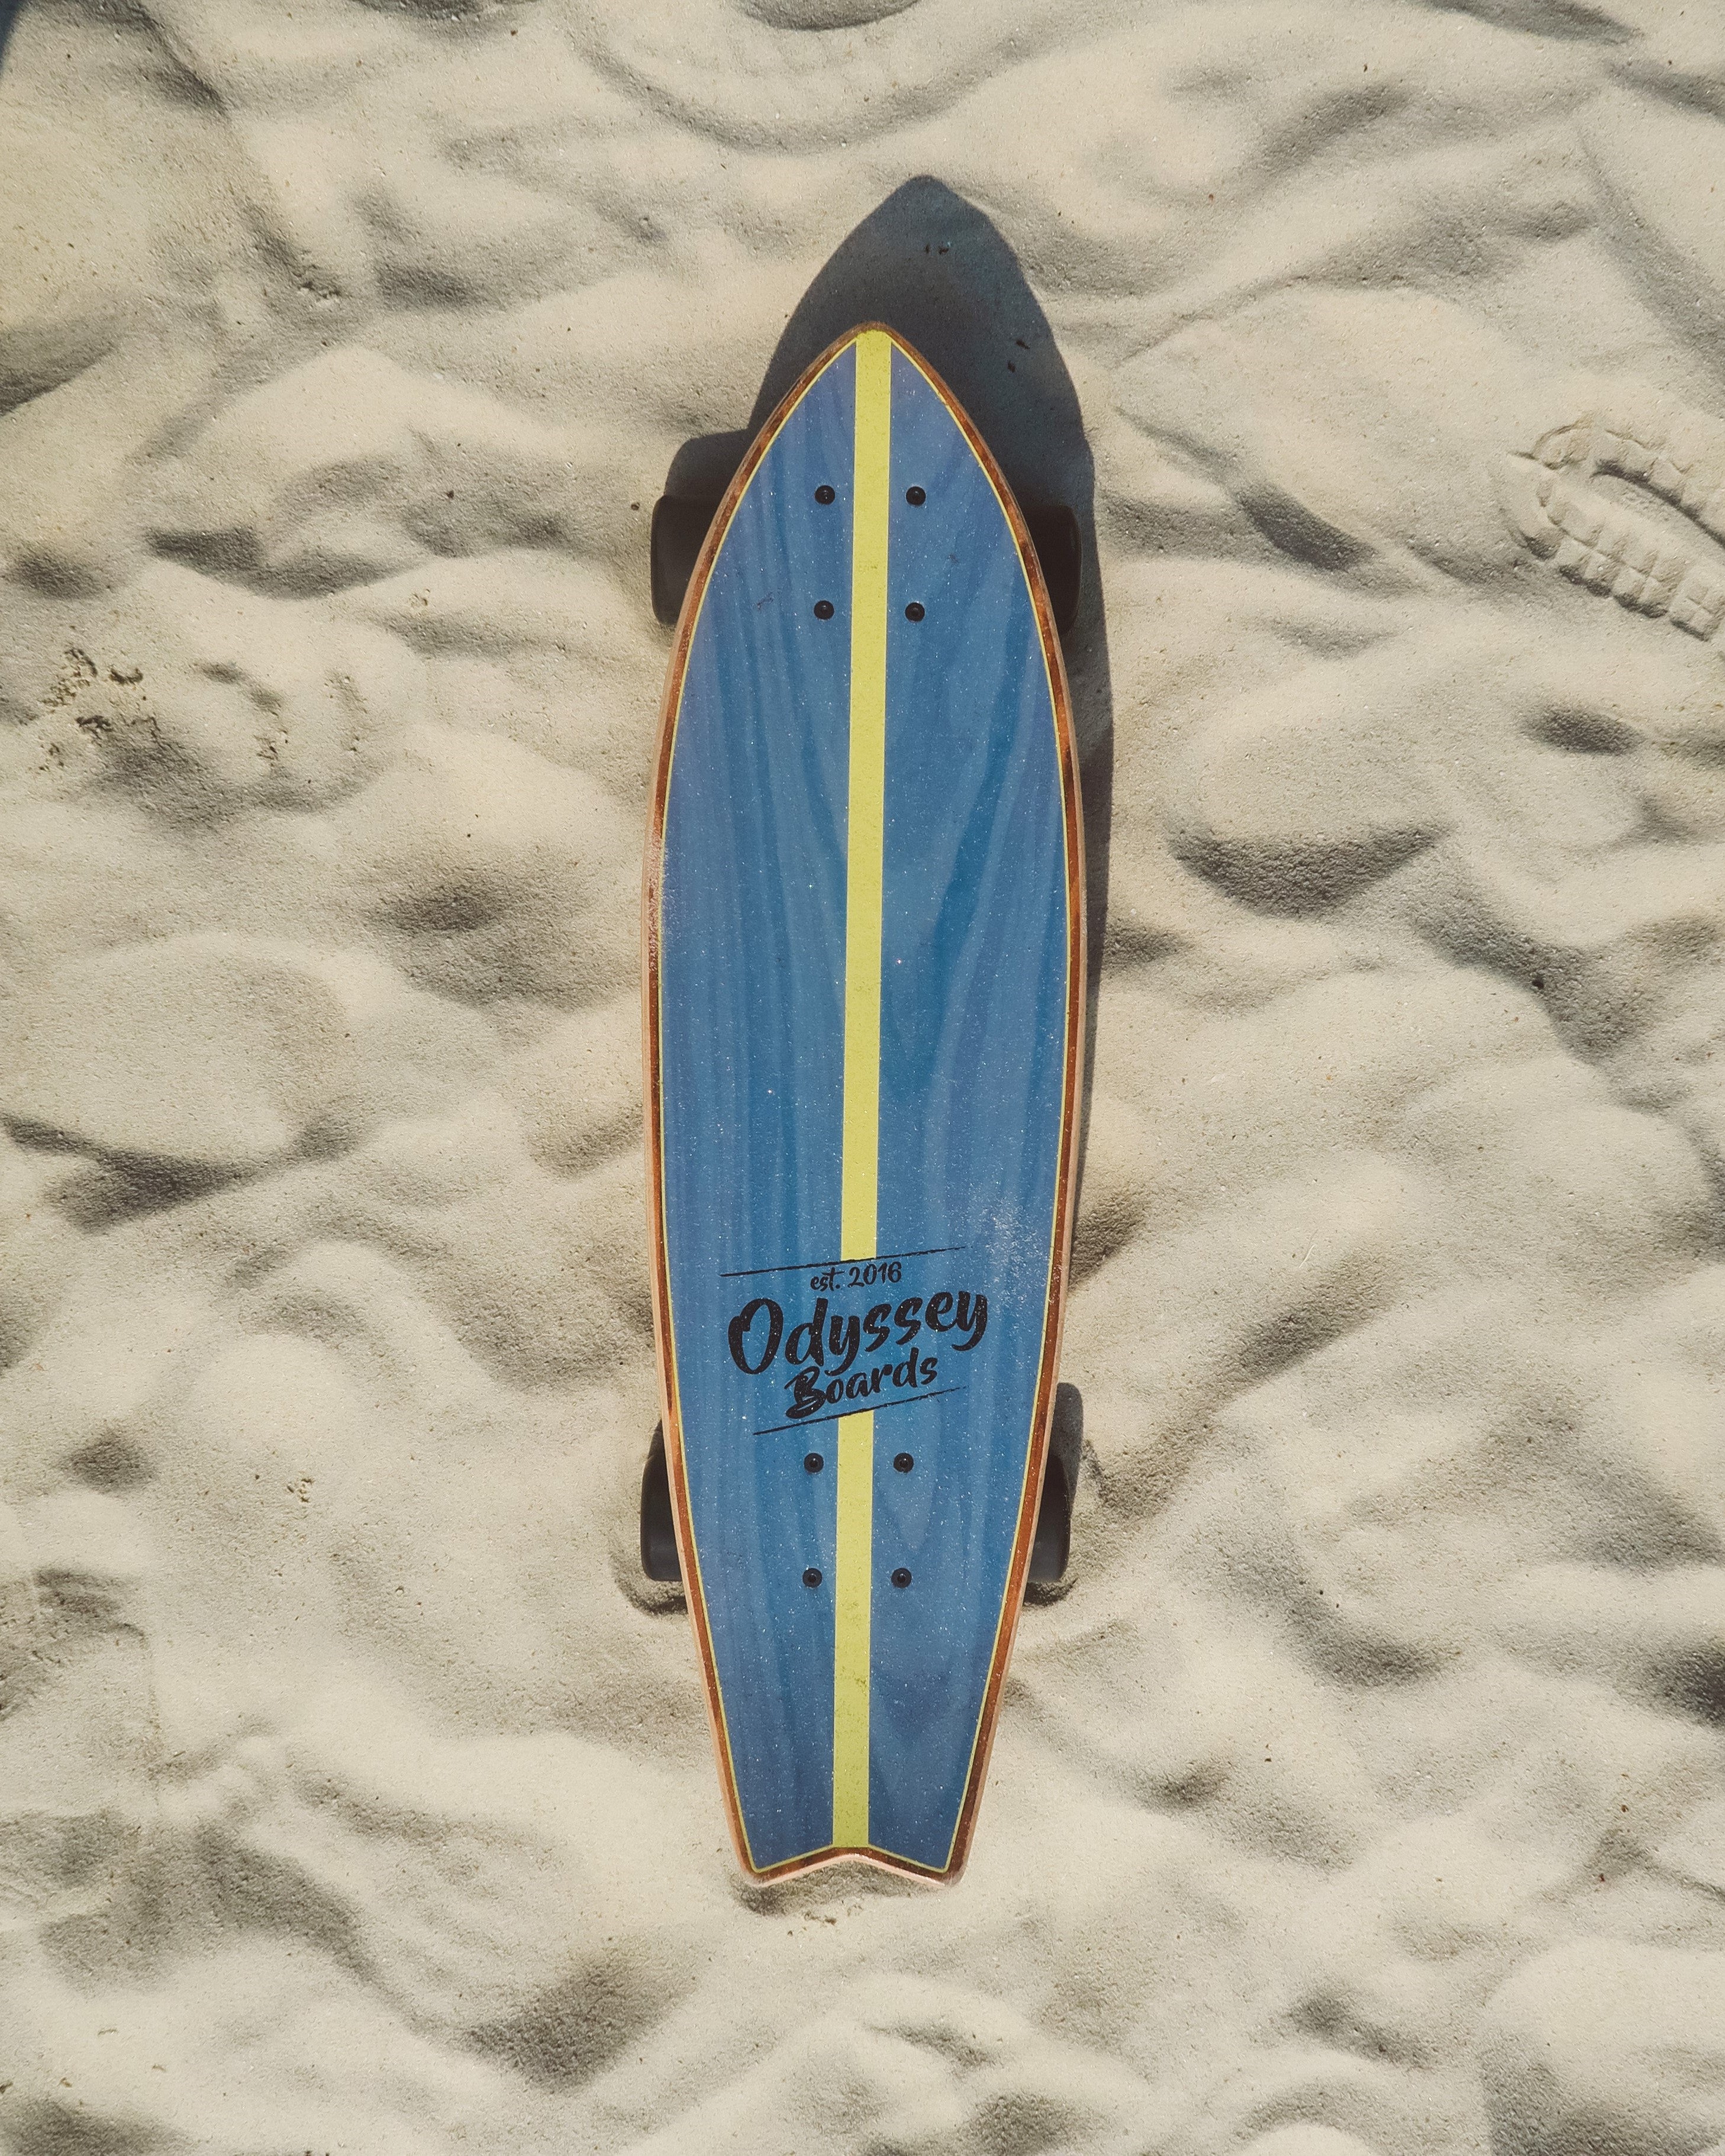 Cruiser board on sand